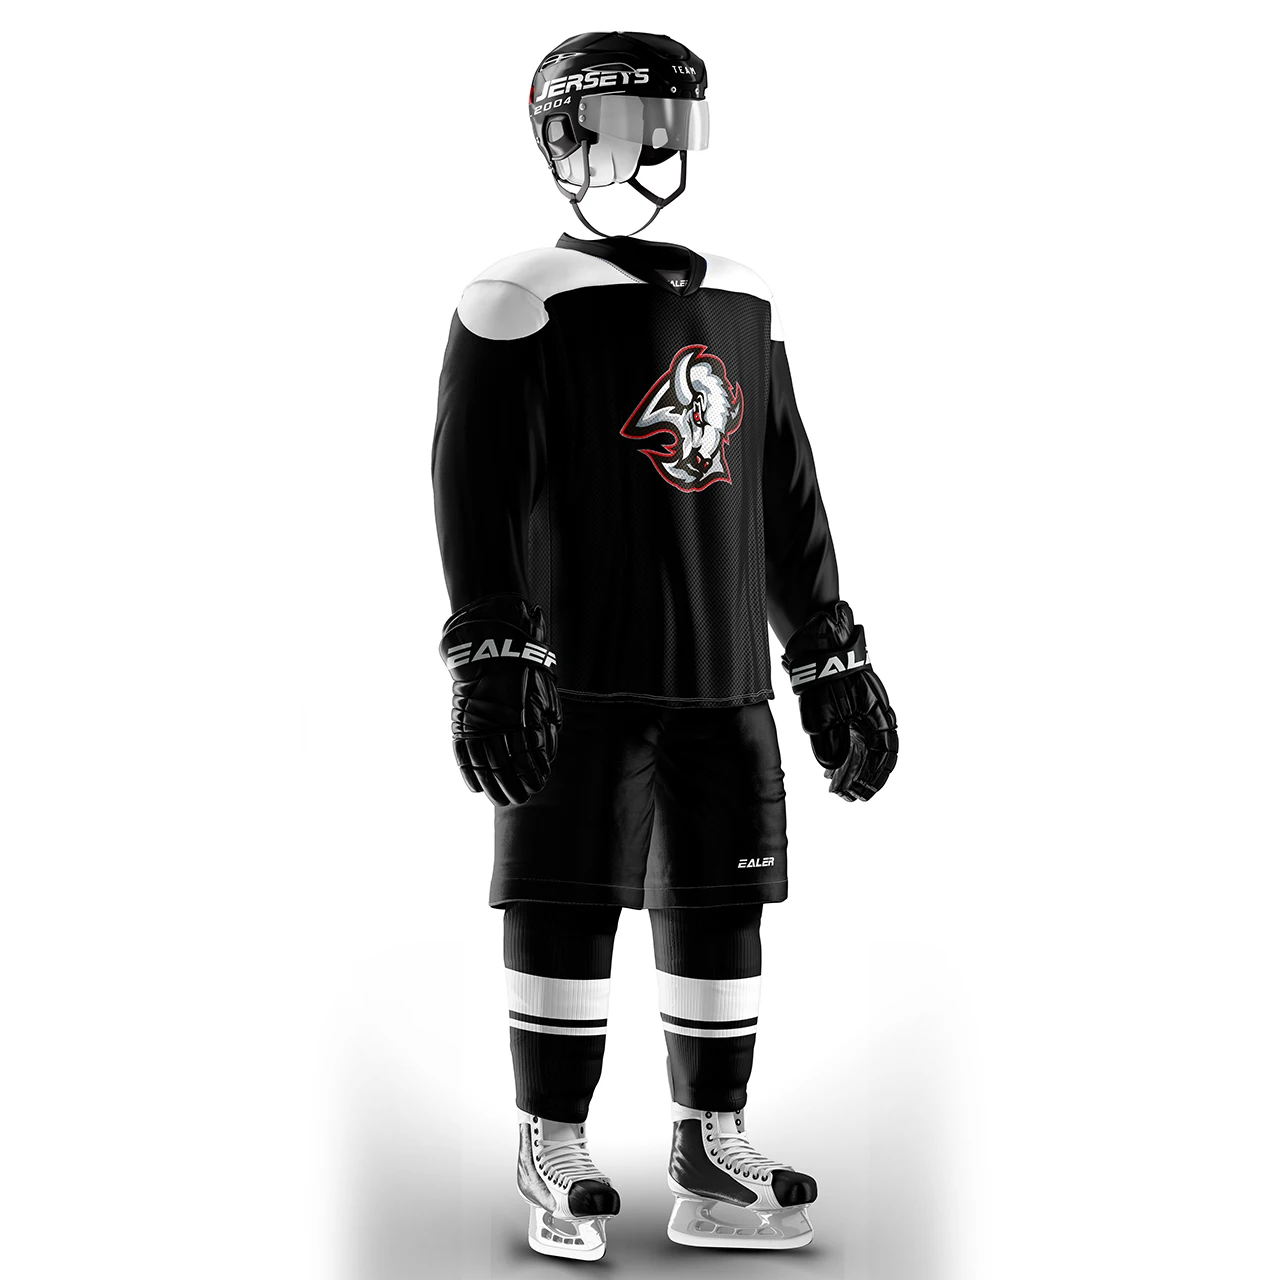 Coldindoor винтажные хоккейные тренировочные майки с принтом логотипа buffalo спортивные дешевые высококачественные H6100-8